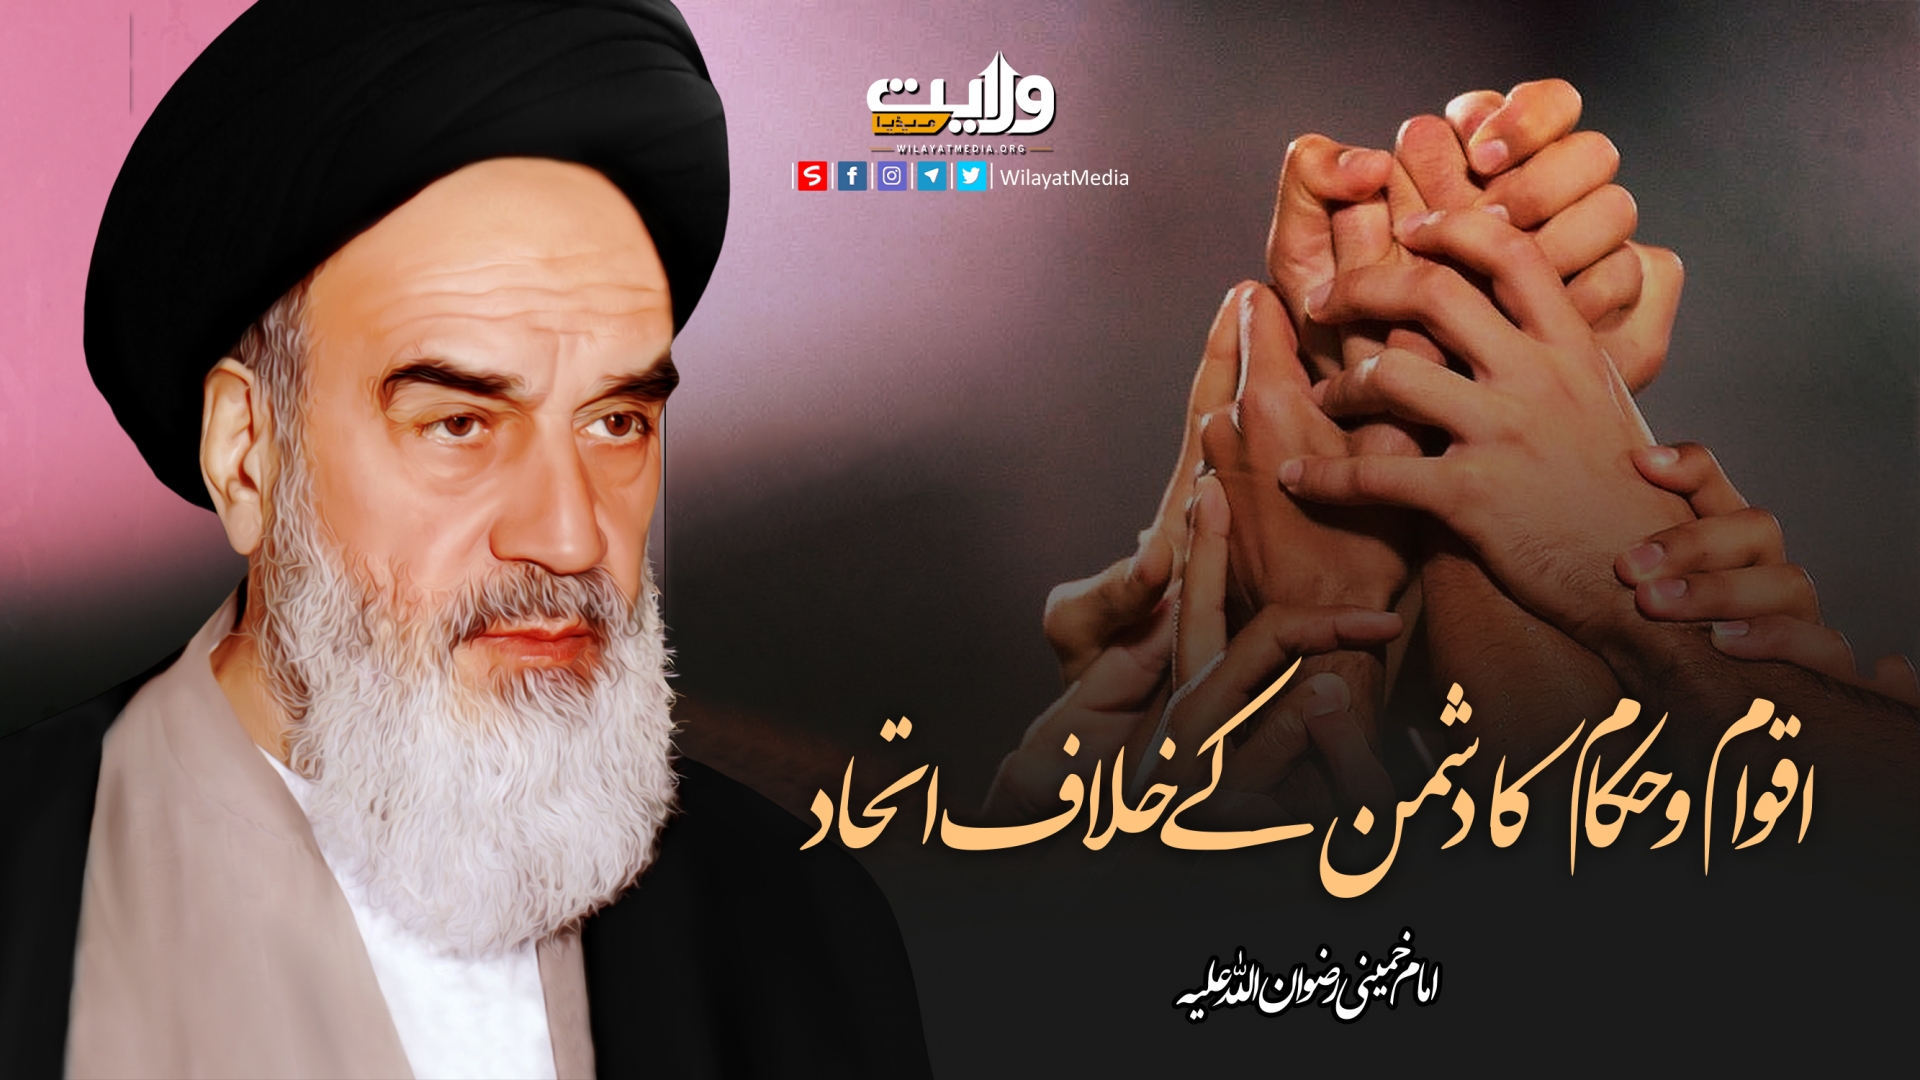 اقوام و حکام کا دشمن کے خلاف اتحاد | امام خمینیؒ | Farsi Sub Urdu